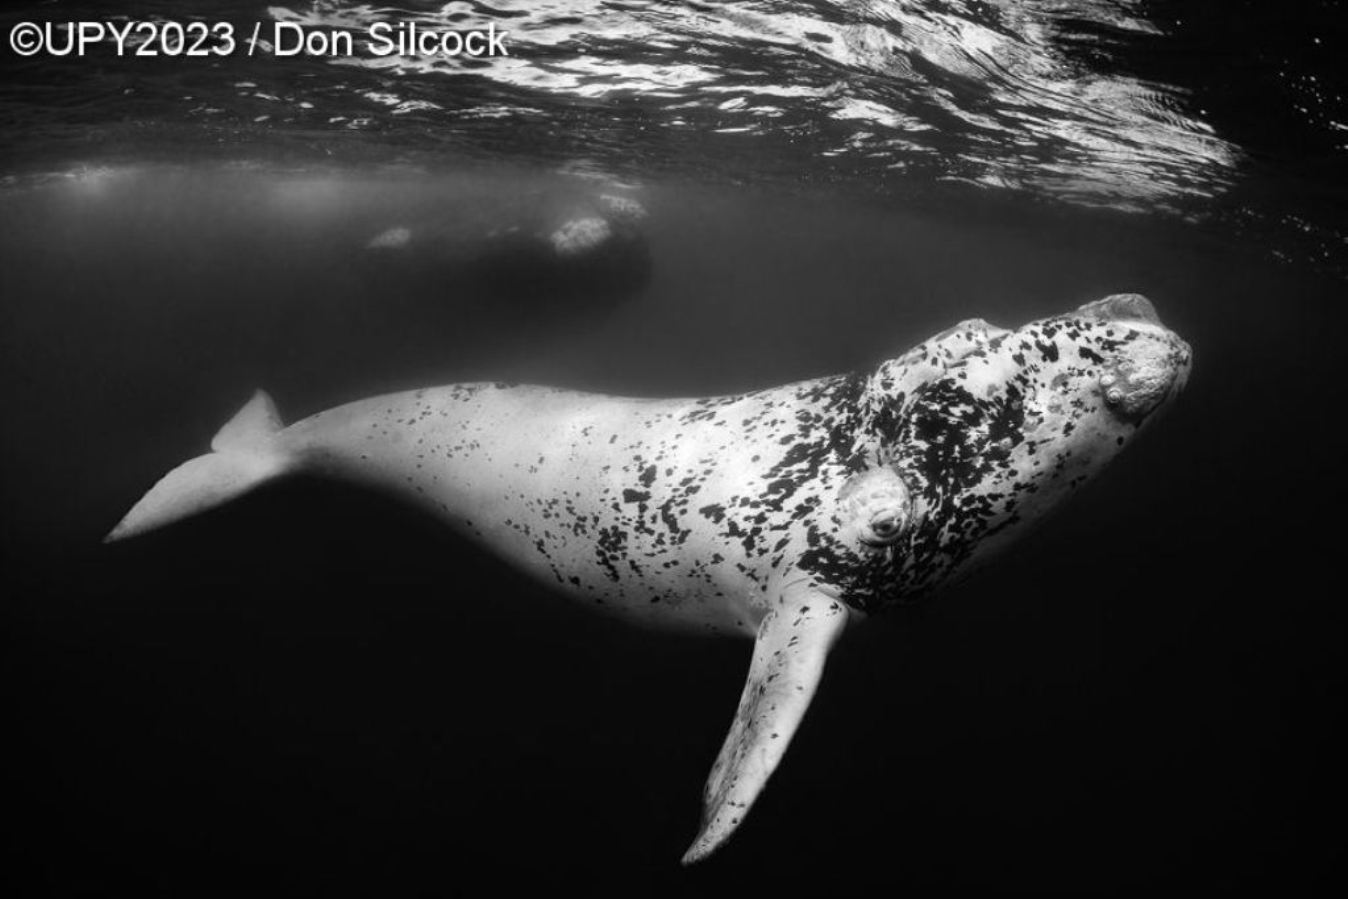 filhote de baleia fotografia subaquática Argentina